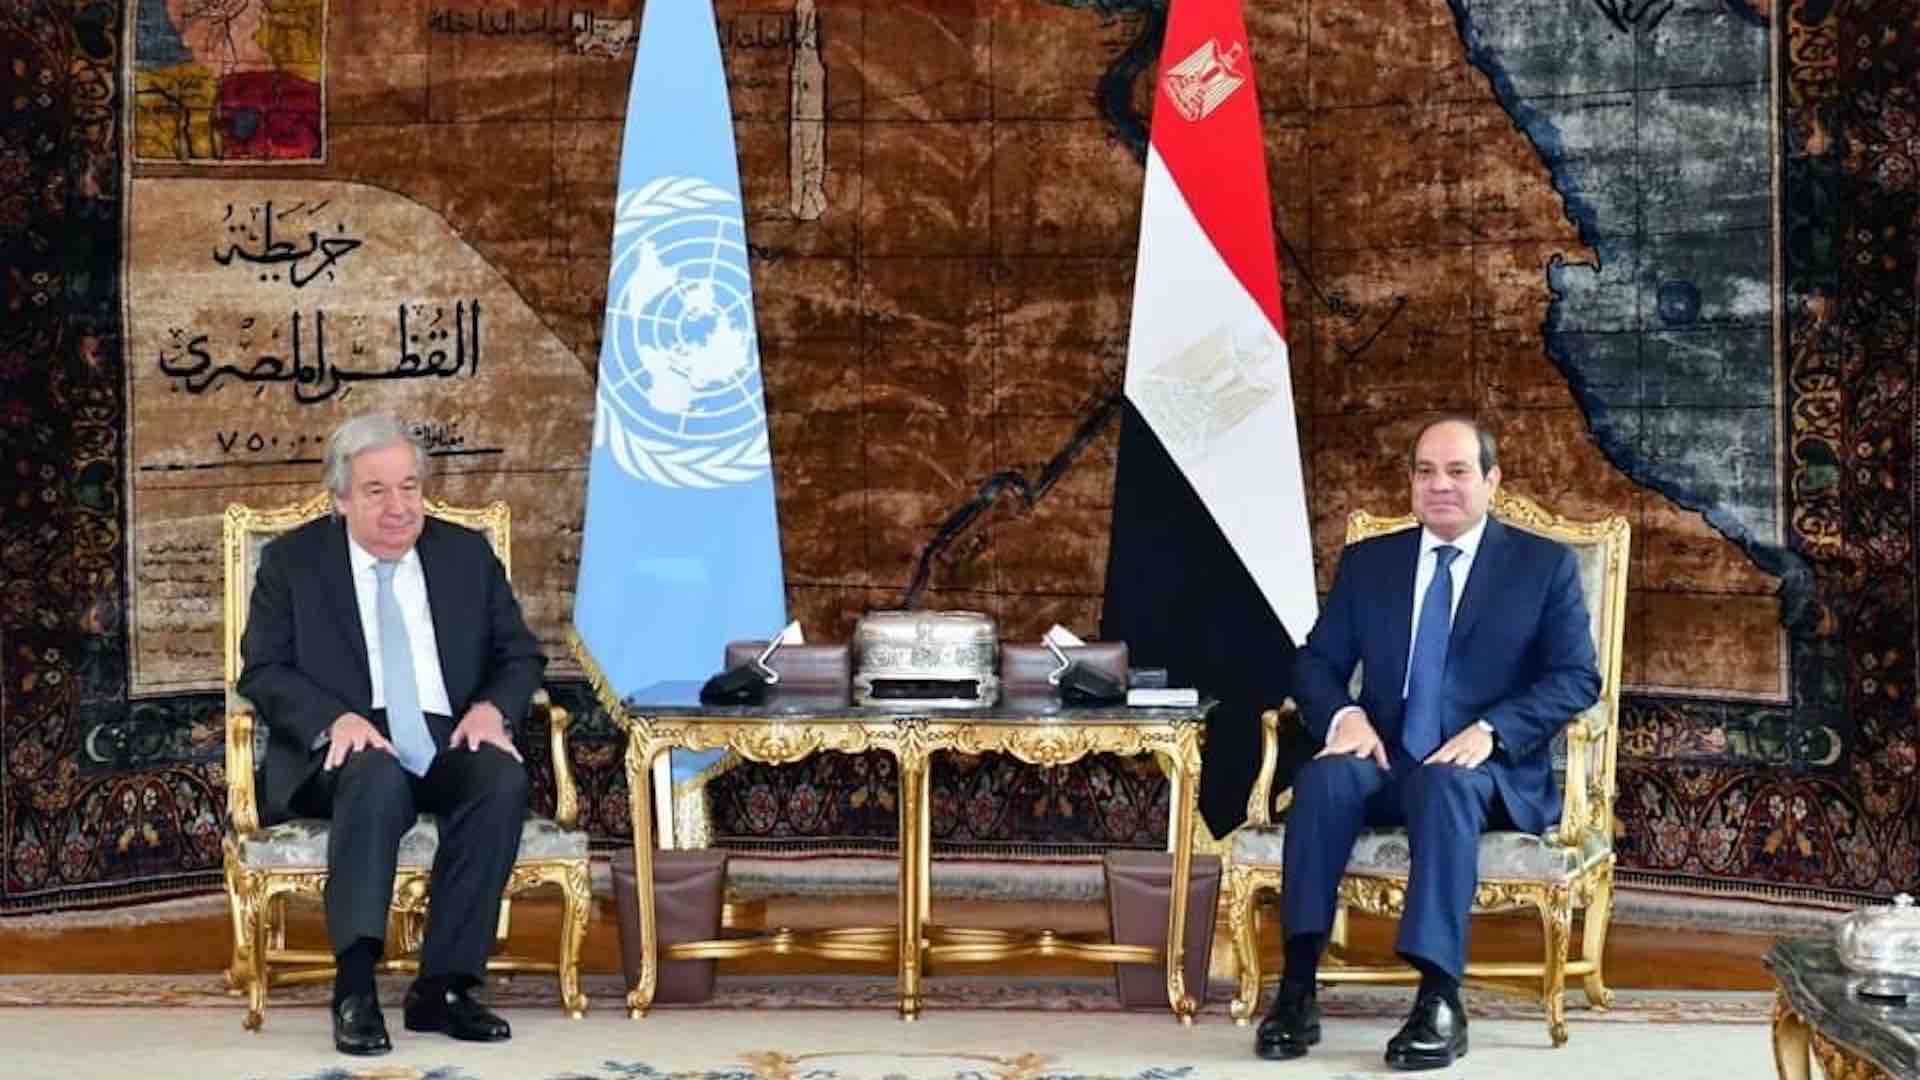 埃及总统阿卜杜勒·法塔赫·塞西和联合国秘书长安东尼奥·古特雷斯就重大的地区和国际事态发展进行了重要讨论，重点讨论了最近在加沙地带发生的事件。此次在开罗举行的会议深入探讨了当前危机的紧迫问题。塞西总统强调联合国安理会在应对不断升级的局势方面的责任，并对某些国家撤回对联合国巴勒斯坦难民救济和工程处 (UNRWA) 的支持表示深切关注。他认为这种行为无异于“对无辜巴勒斯坦人的集体惩罚”，并敦促各方共同努力缓解他们的困境。塞西总统在概述立即采取行动的战略时强调，迫切需要停火、促进被拘留者的交换以及迅速提供人道主义援助，以减轻加沙人民的苦难。他强调与联合国相关机构协调的重要性，以确保通过陆路有效分配援助，同时也考虑空投的可行性，特别是在加沙北部地区，那里的通道受到严重限制。两位领导人都承认局势的严重性，并强调防止进一步升级至关重要。他们坚决反对驱逐巴勒斯坦人的企图，并警告不要在巴勒斯坦拉法采取军事行动，指出这可能会对严重的人道主义危机造成灾难性后果。塞西总统和古特雷斯秘书长的会晤强调了国际合作解决加沙地带危机的迫切需要。在生命受到威胁和人道主义条件恶化的情况下，国际社会必须迅速果断采取行动，以减轻巴勒斯坦人的痛苦，并努力实现冲突的可持续解决。